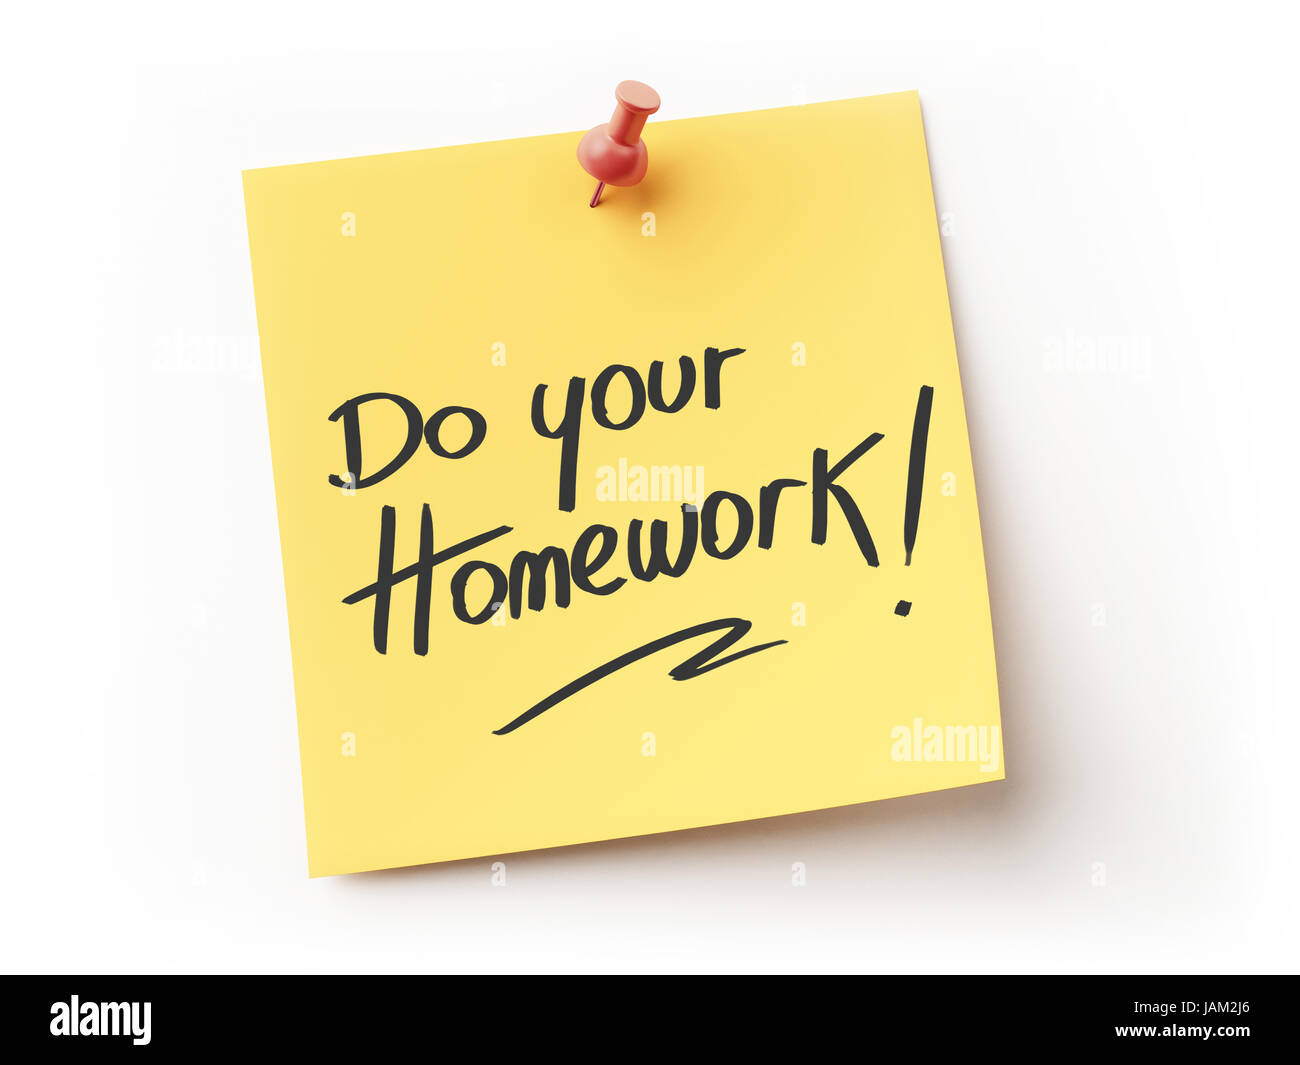 You can do your homework. Do your homework. Do you Home work. Do your homework imperative. Do your work.